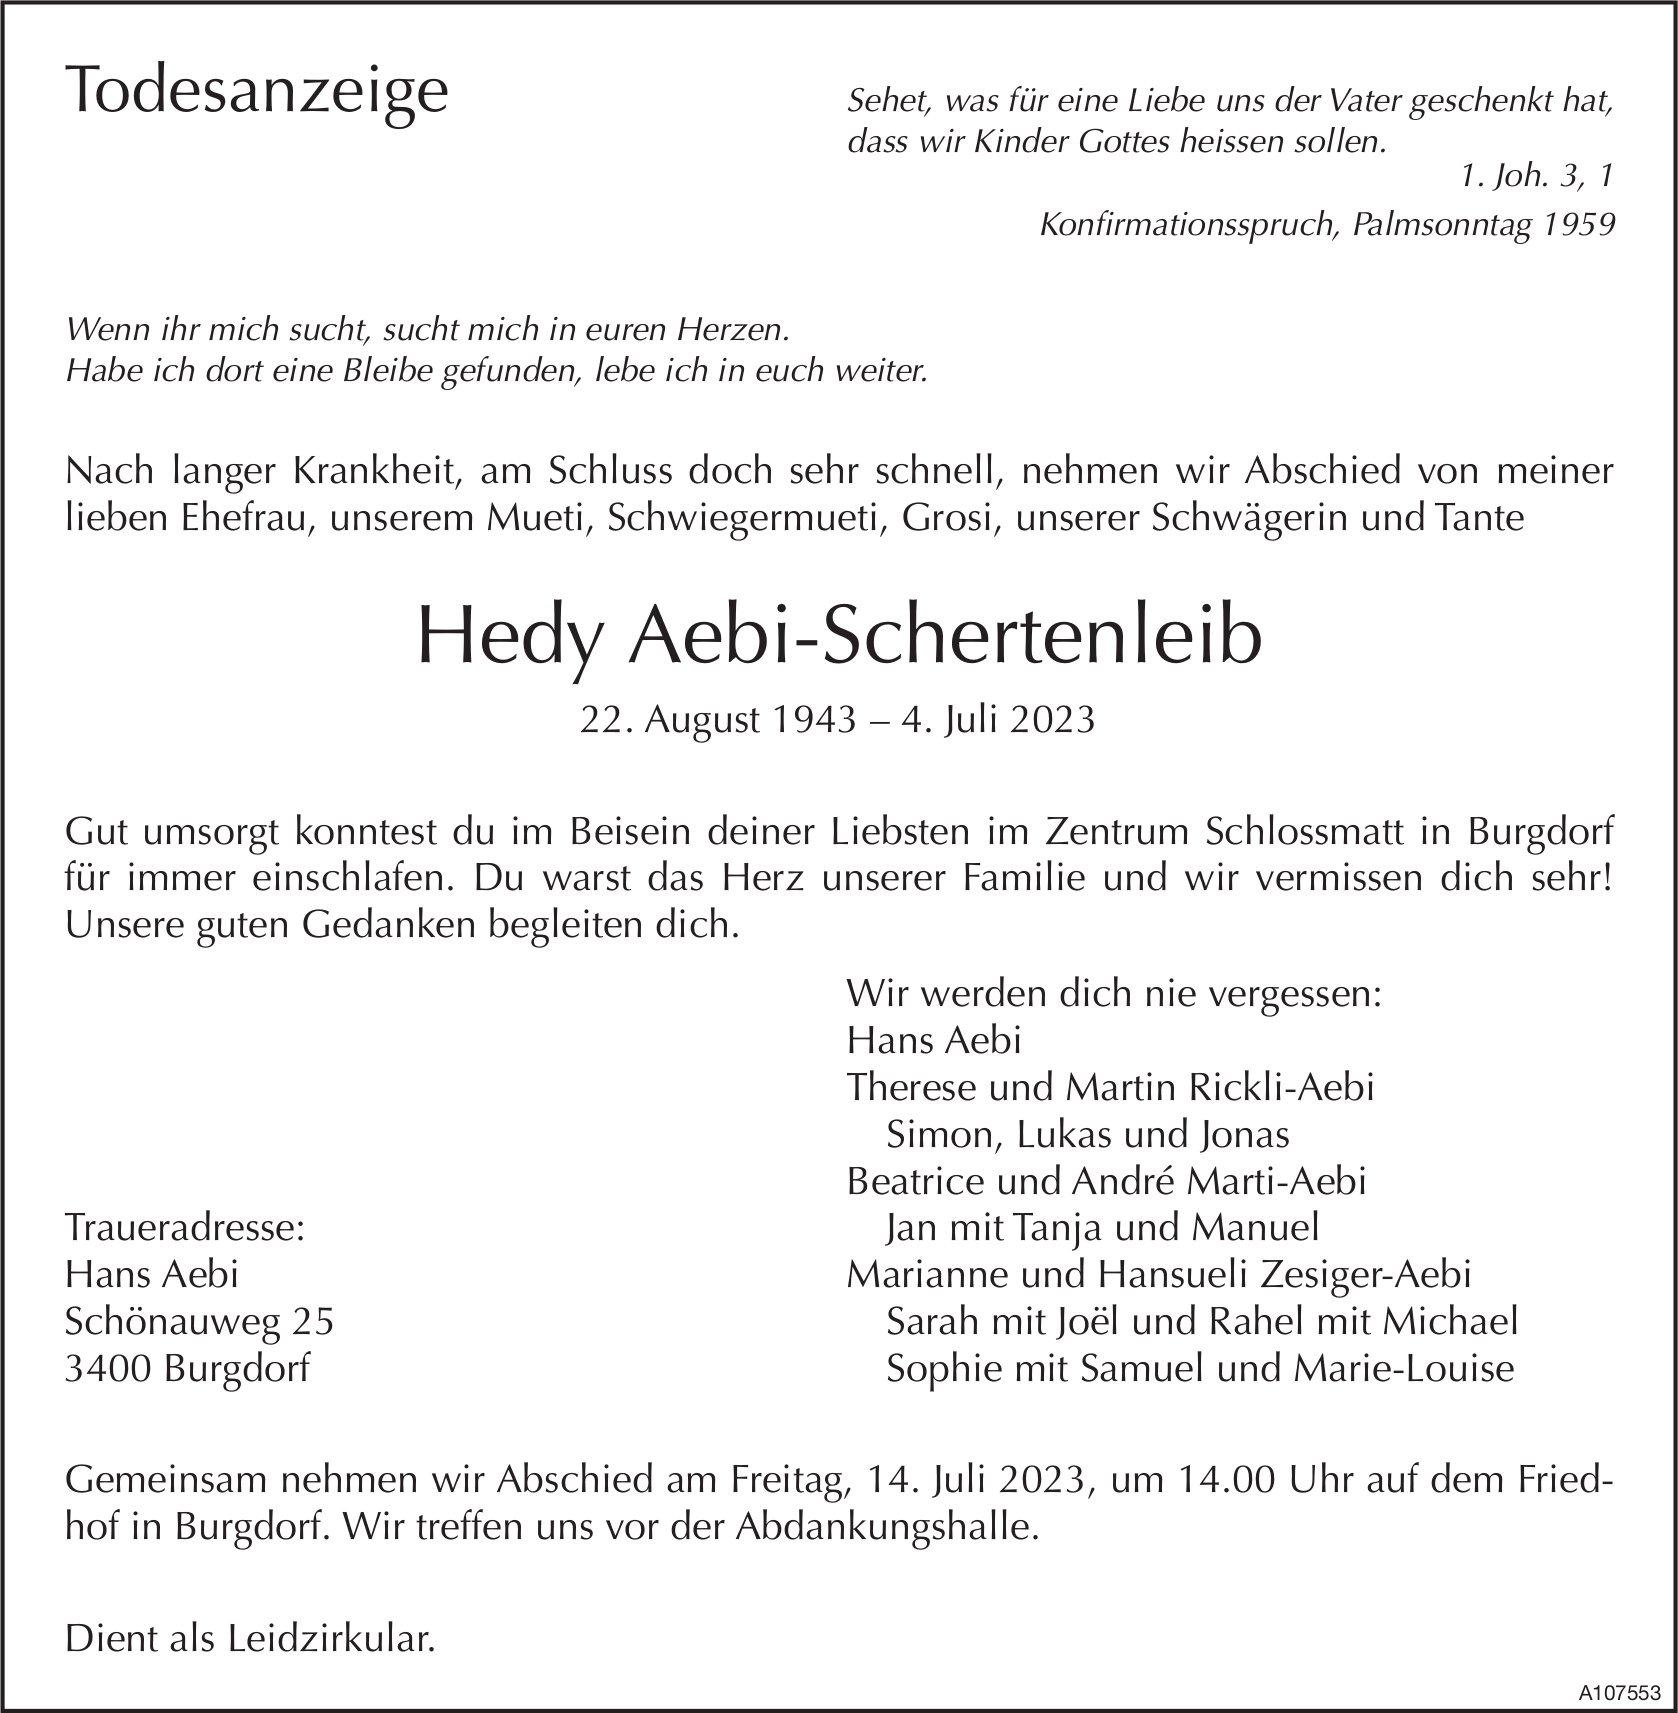 Hedy Aebi-Schertenleib, Juli 2023 / TA